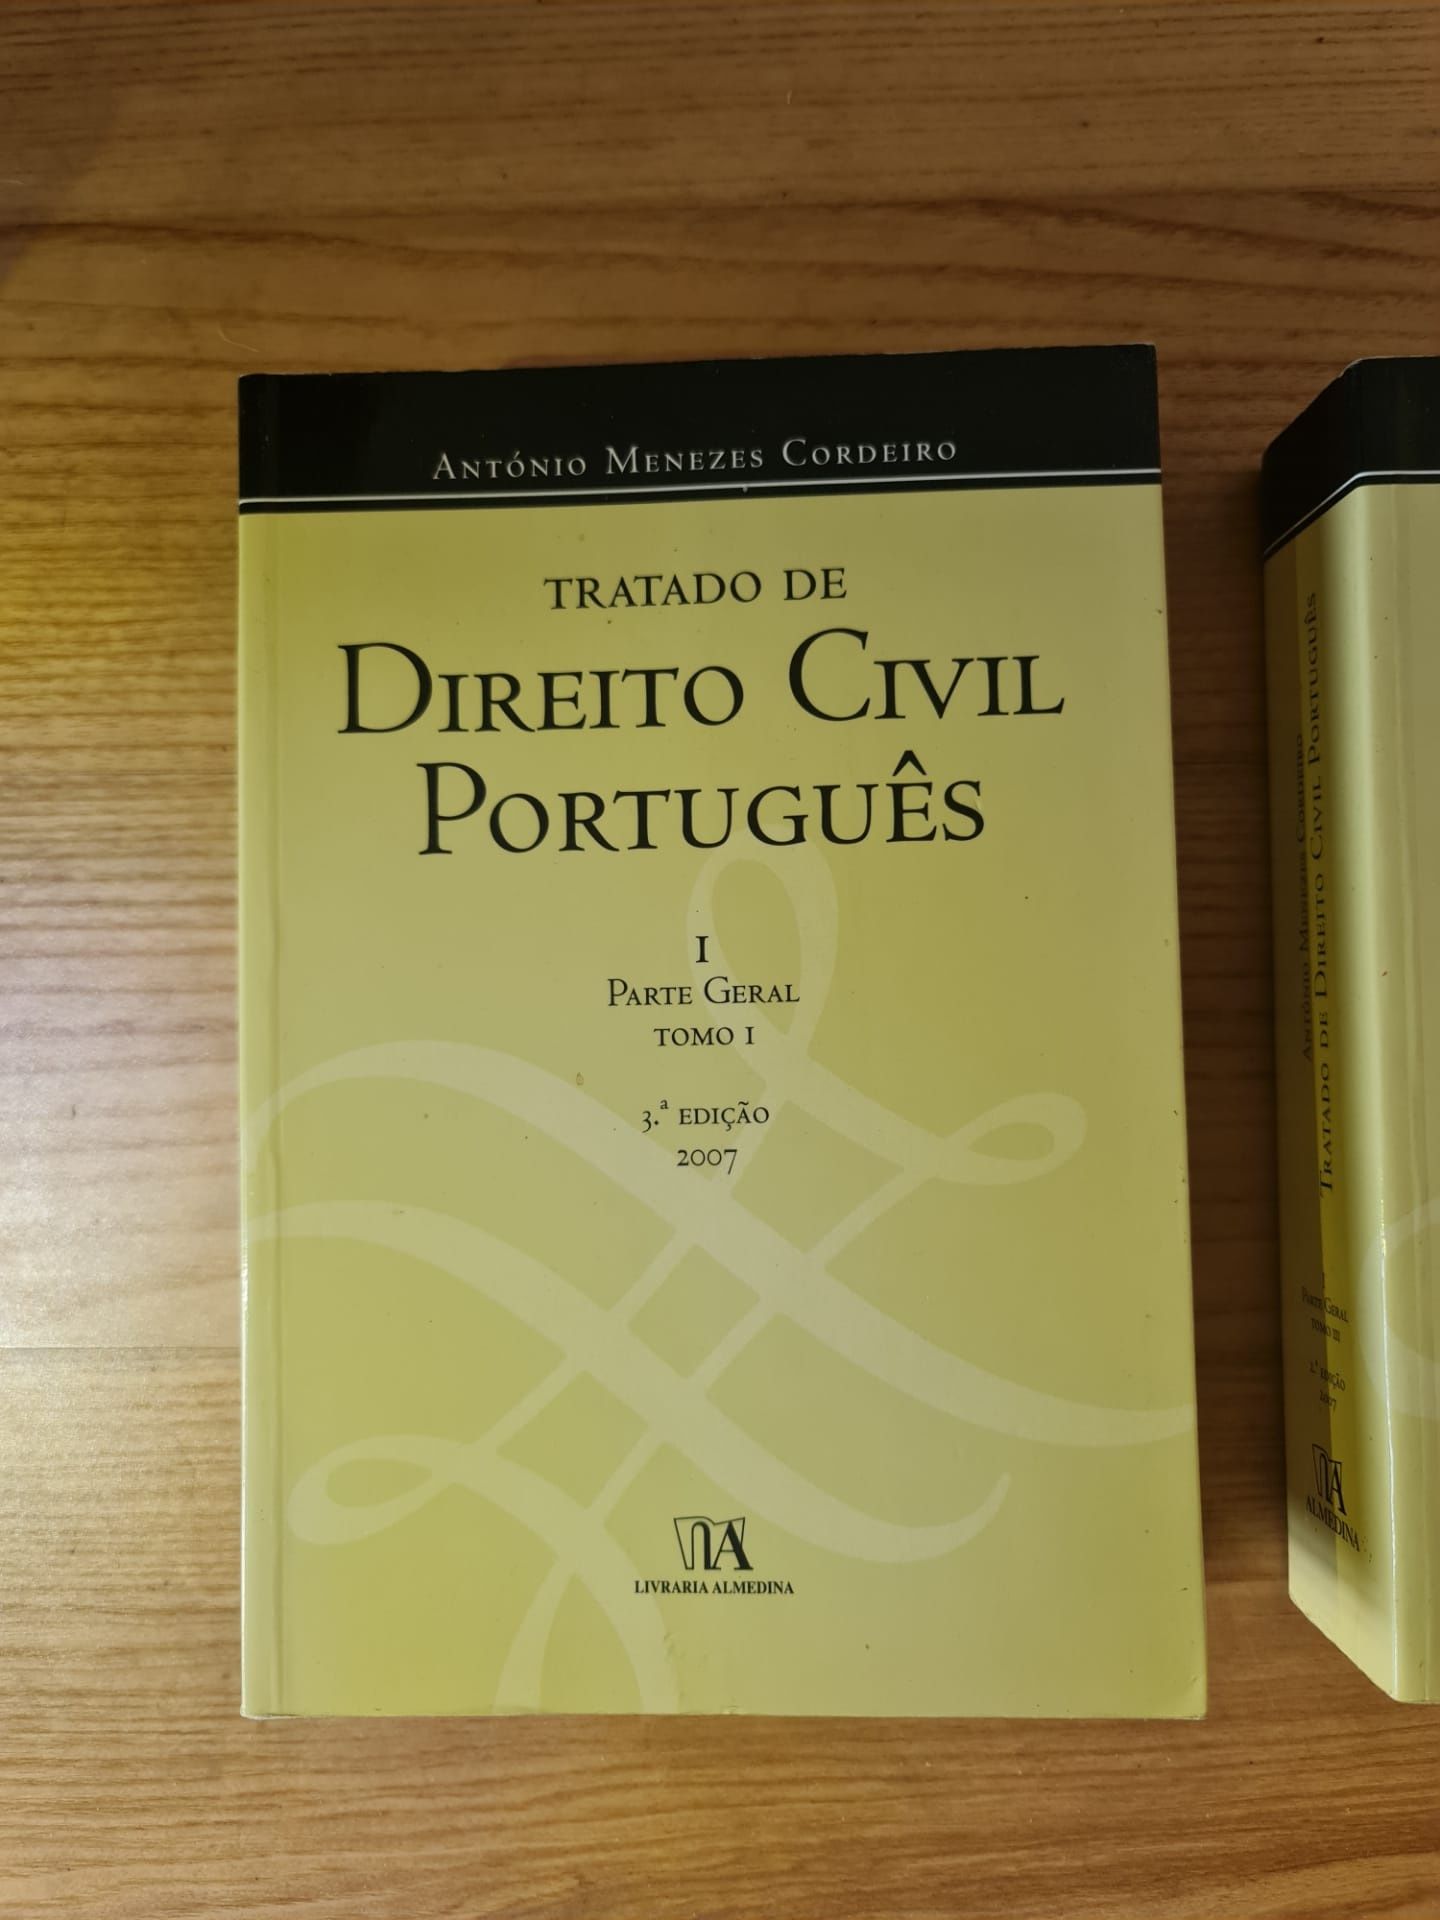 Tratado de Direito Civil - António Menezes Cordeiro - Tomo I, III, IV